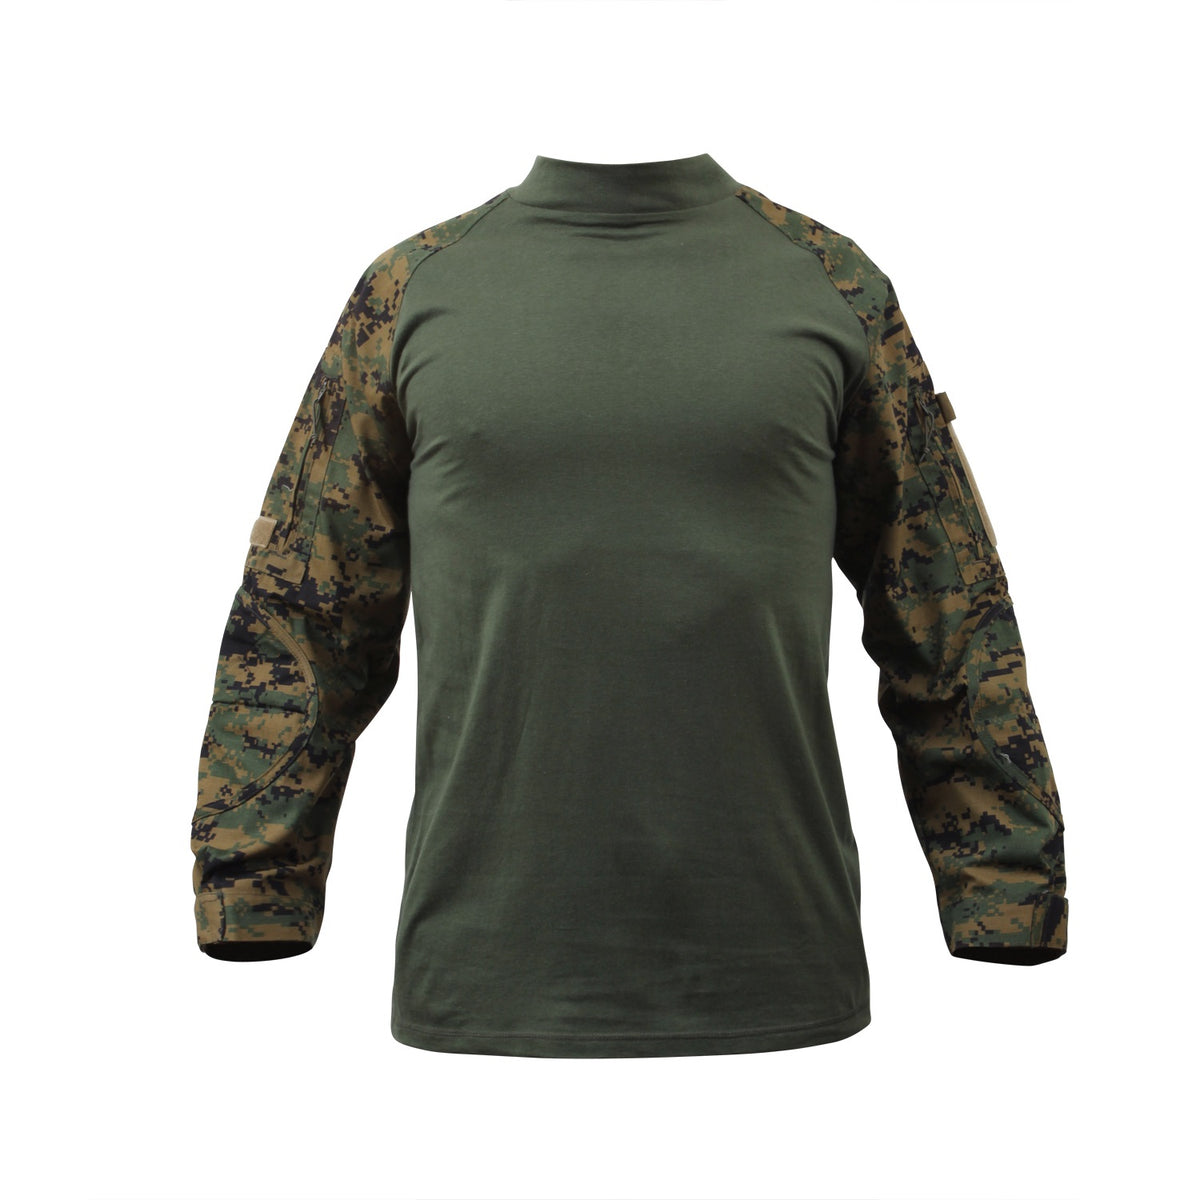 Rothco Military NYCO FR Fire Retardant Combat Shirt Woodland Digital Camo